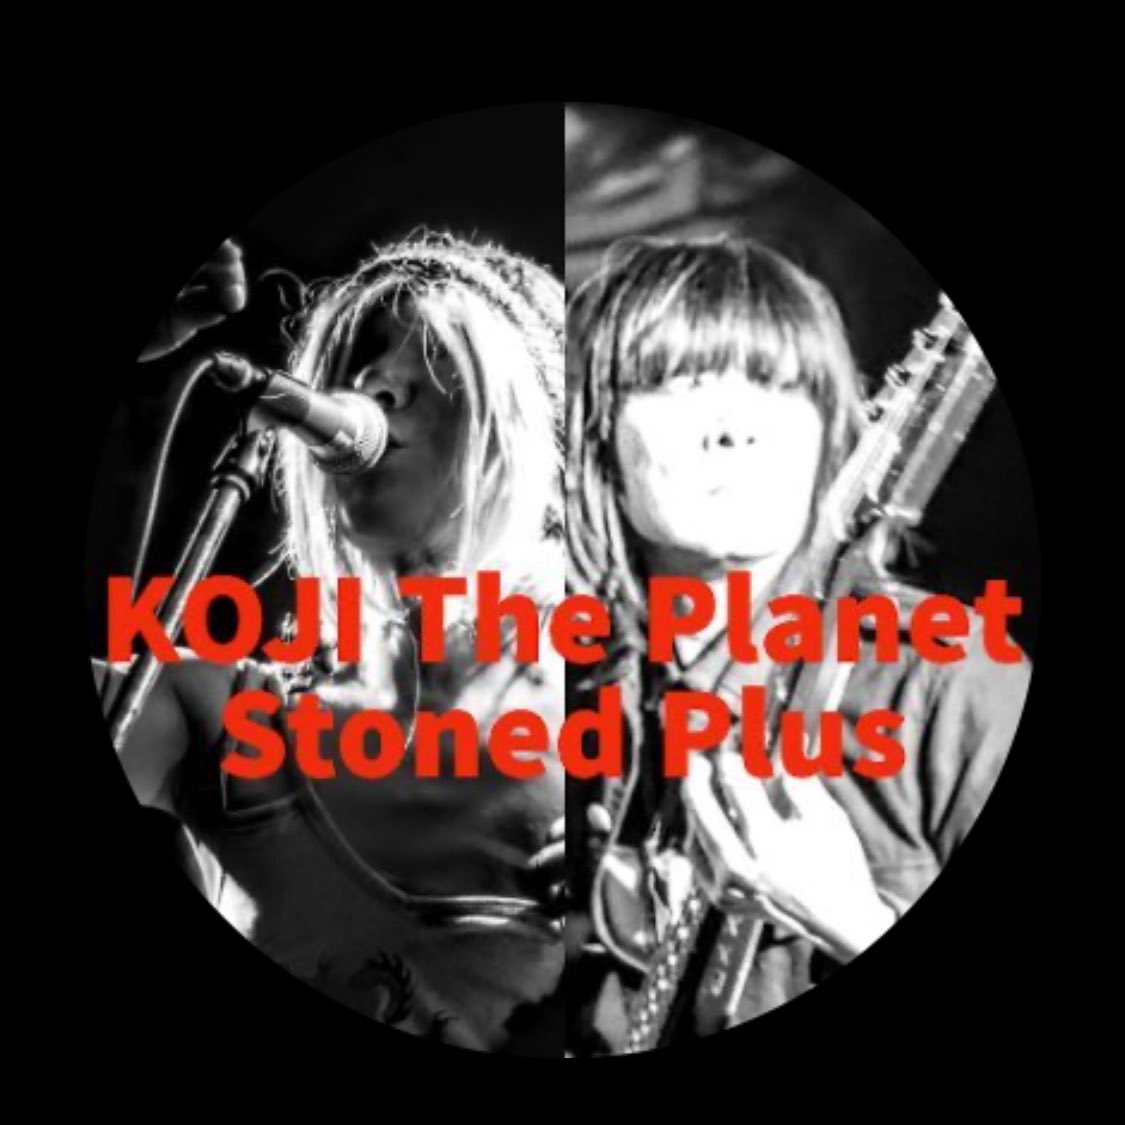 【フォロワー様2700✨感謝ゆるい企画】 あなたのアイコン✨みき🌟たにしテイストのイラストにします💡 ご参加ありがとうございます🥰 第1️⃣4️⃣段 KOJI The Planet Stoned Plusさん @KojiPlanet 音楽の人を描くのは楽しいと再確認🎸⚡️ リプに動画あるから見てね ←みき🌟たにし作 もとのアイコン→